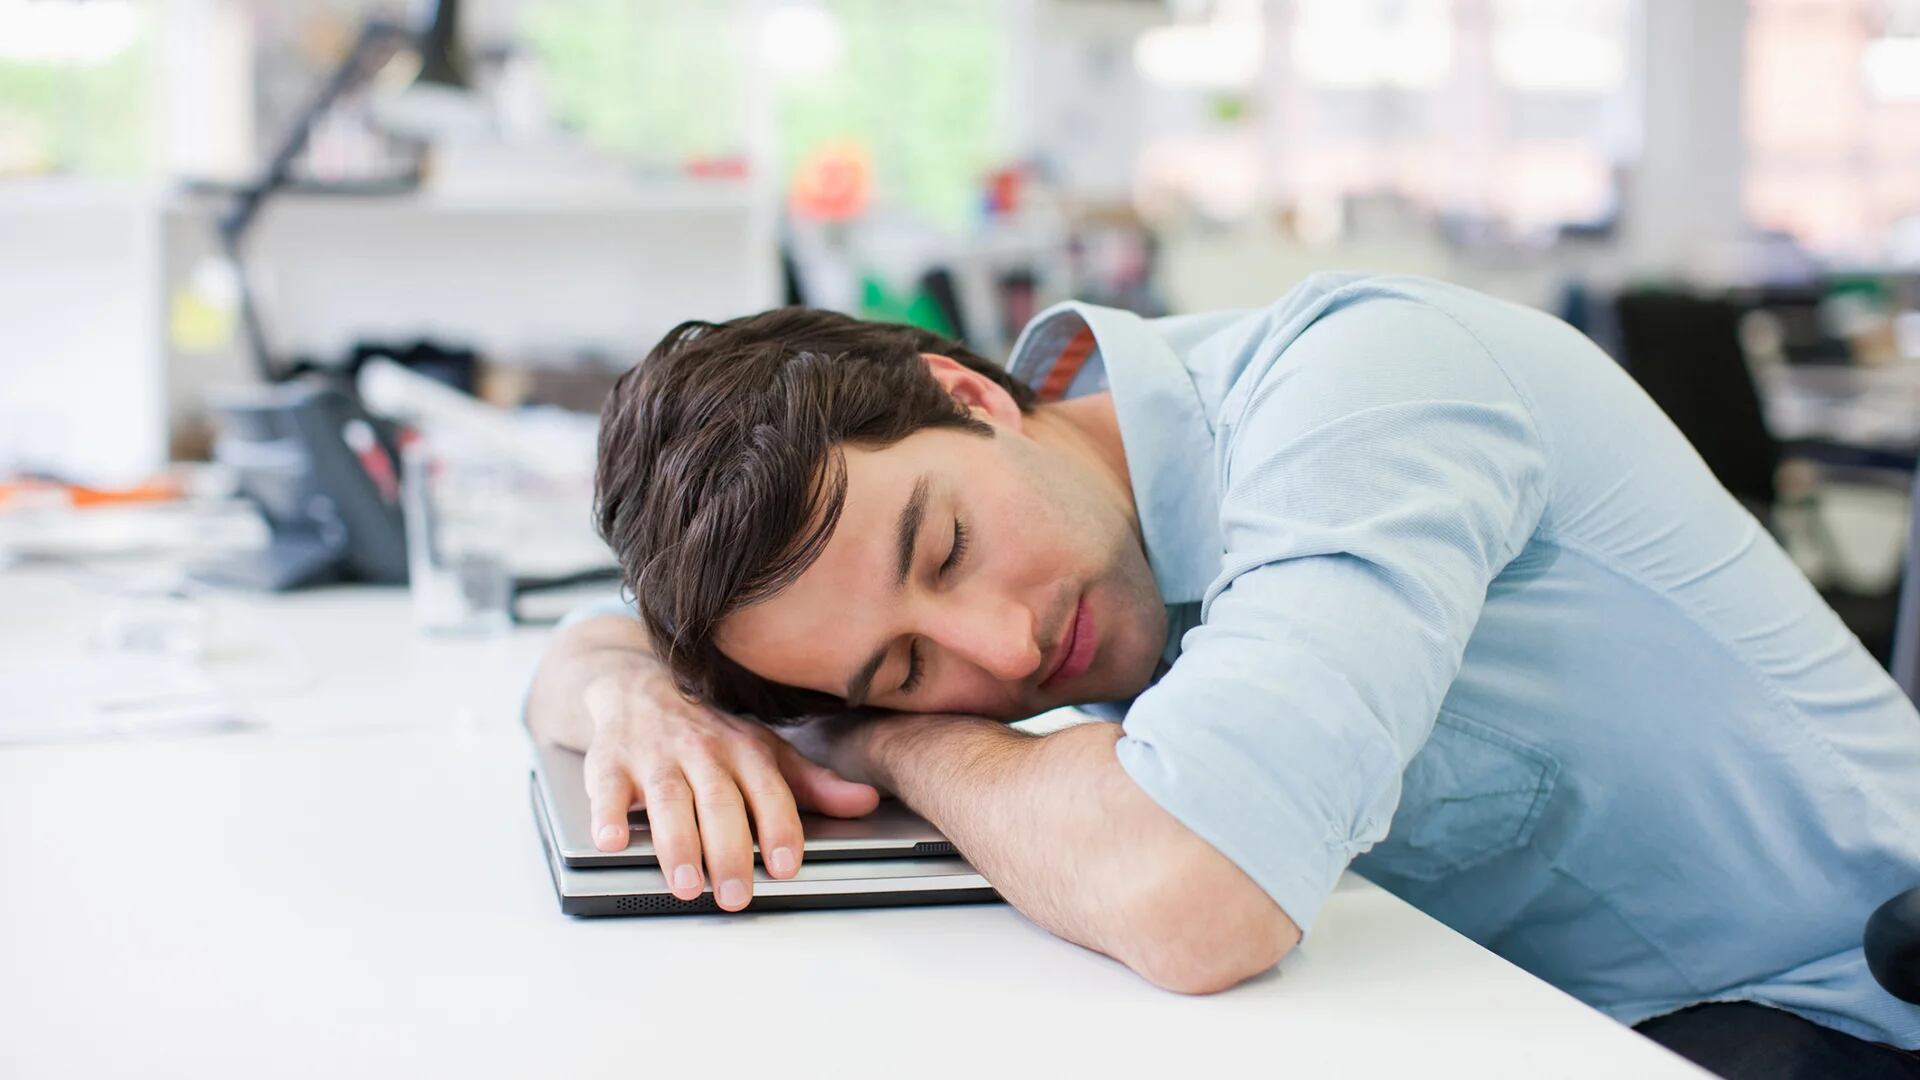 Para los adultos, dormir menos de 6 horas o sobrepasar las 10 puede ser un problema (Getty)